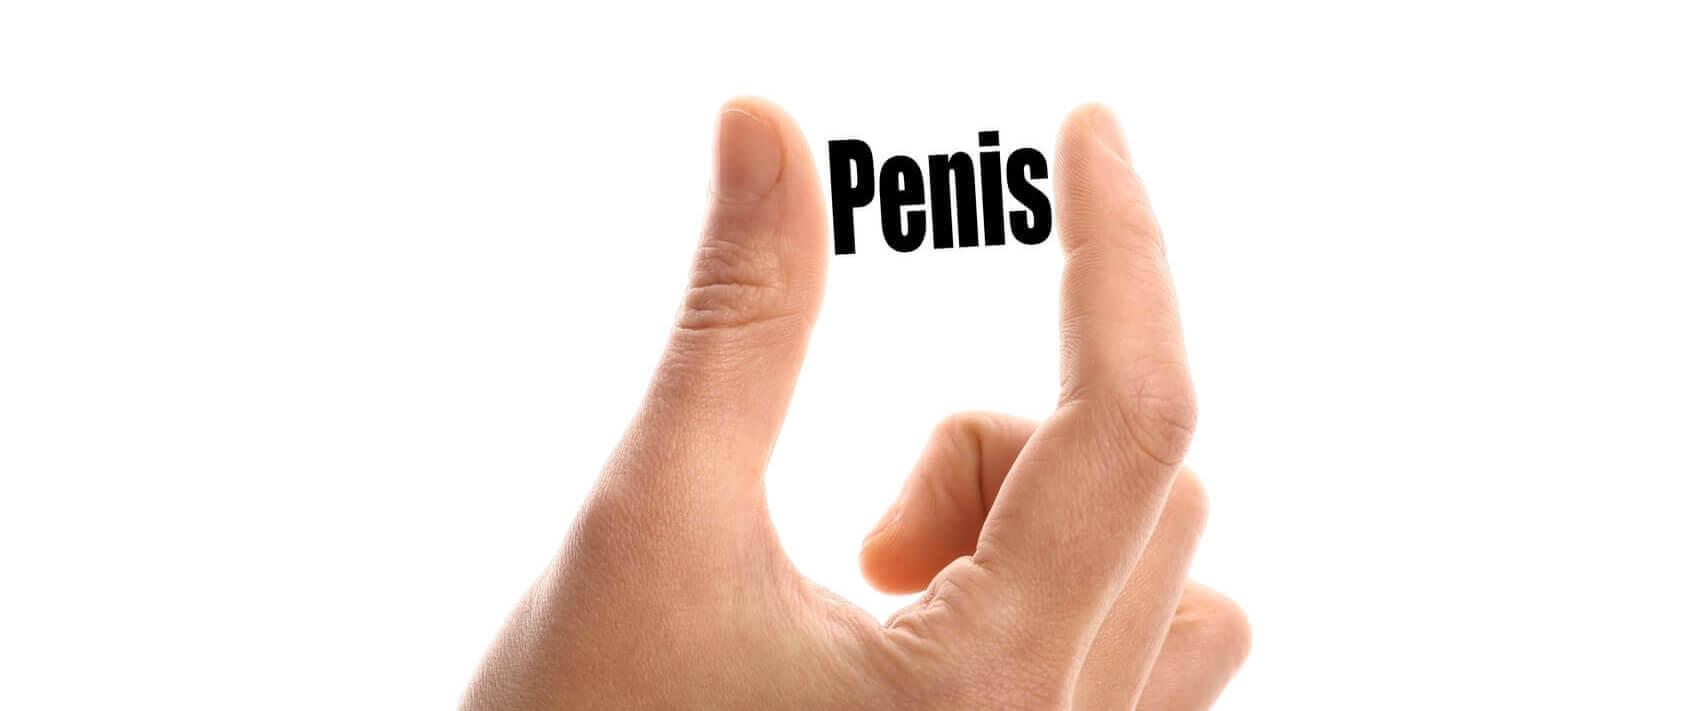 Cum sa obtii un penis mai mare: 3 cele mai eficiente tehnici de crestere a penisului in dimensiuni